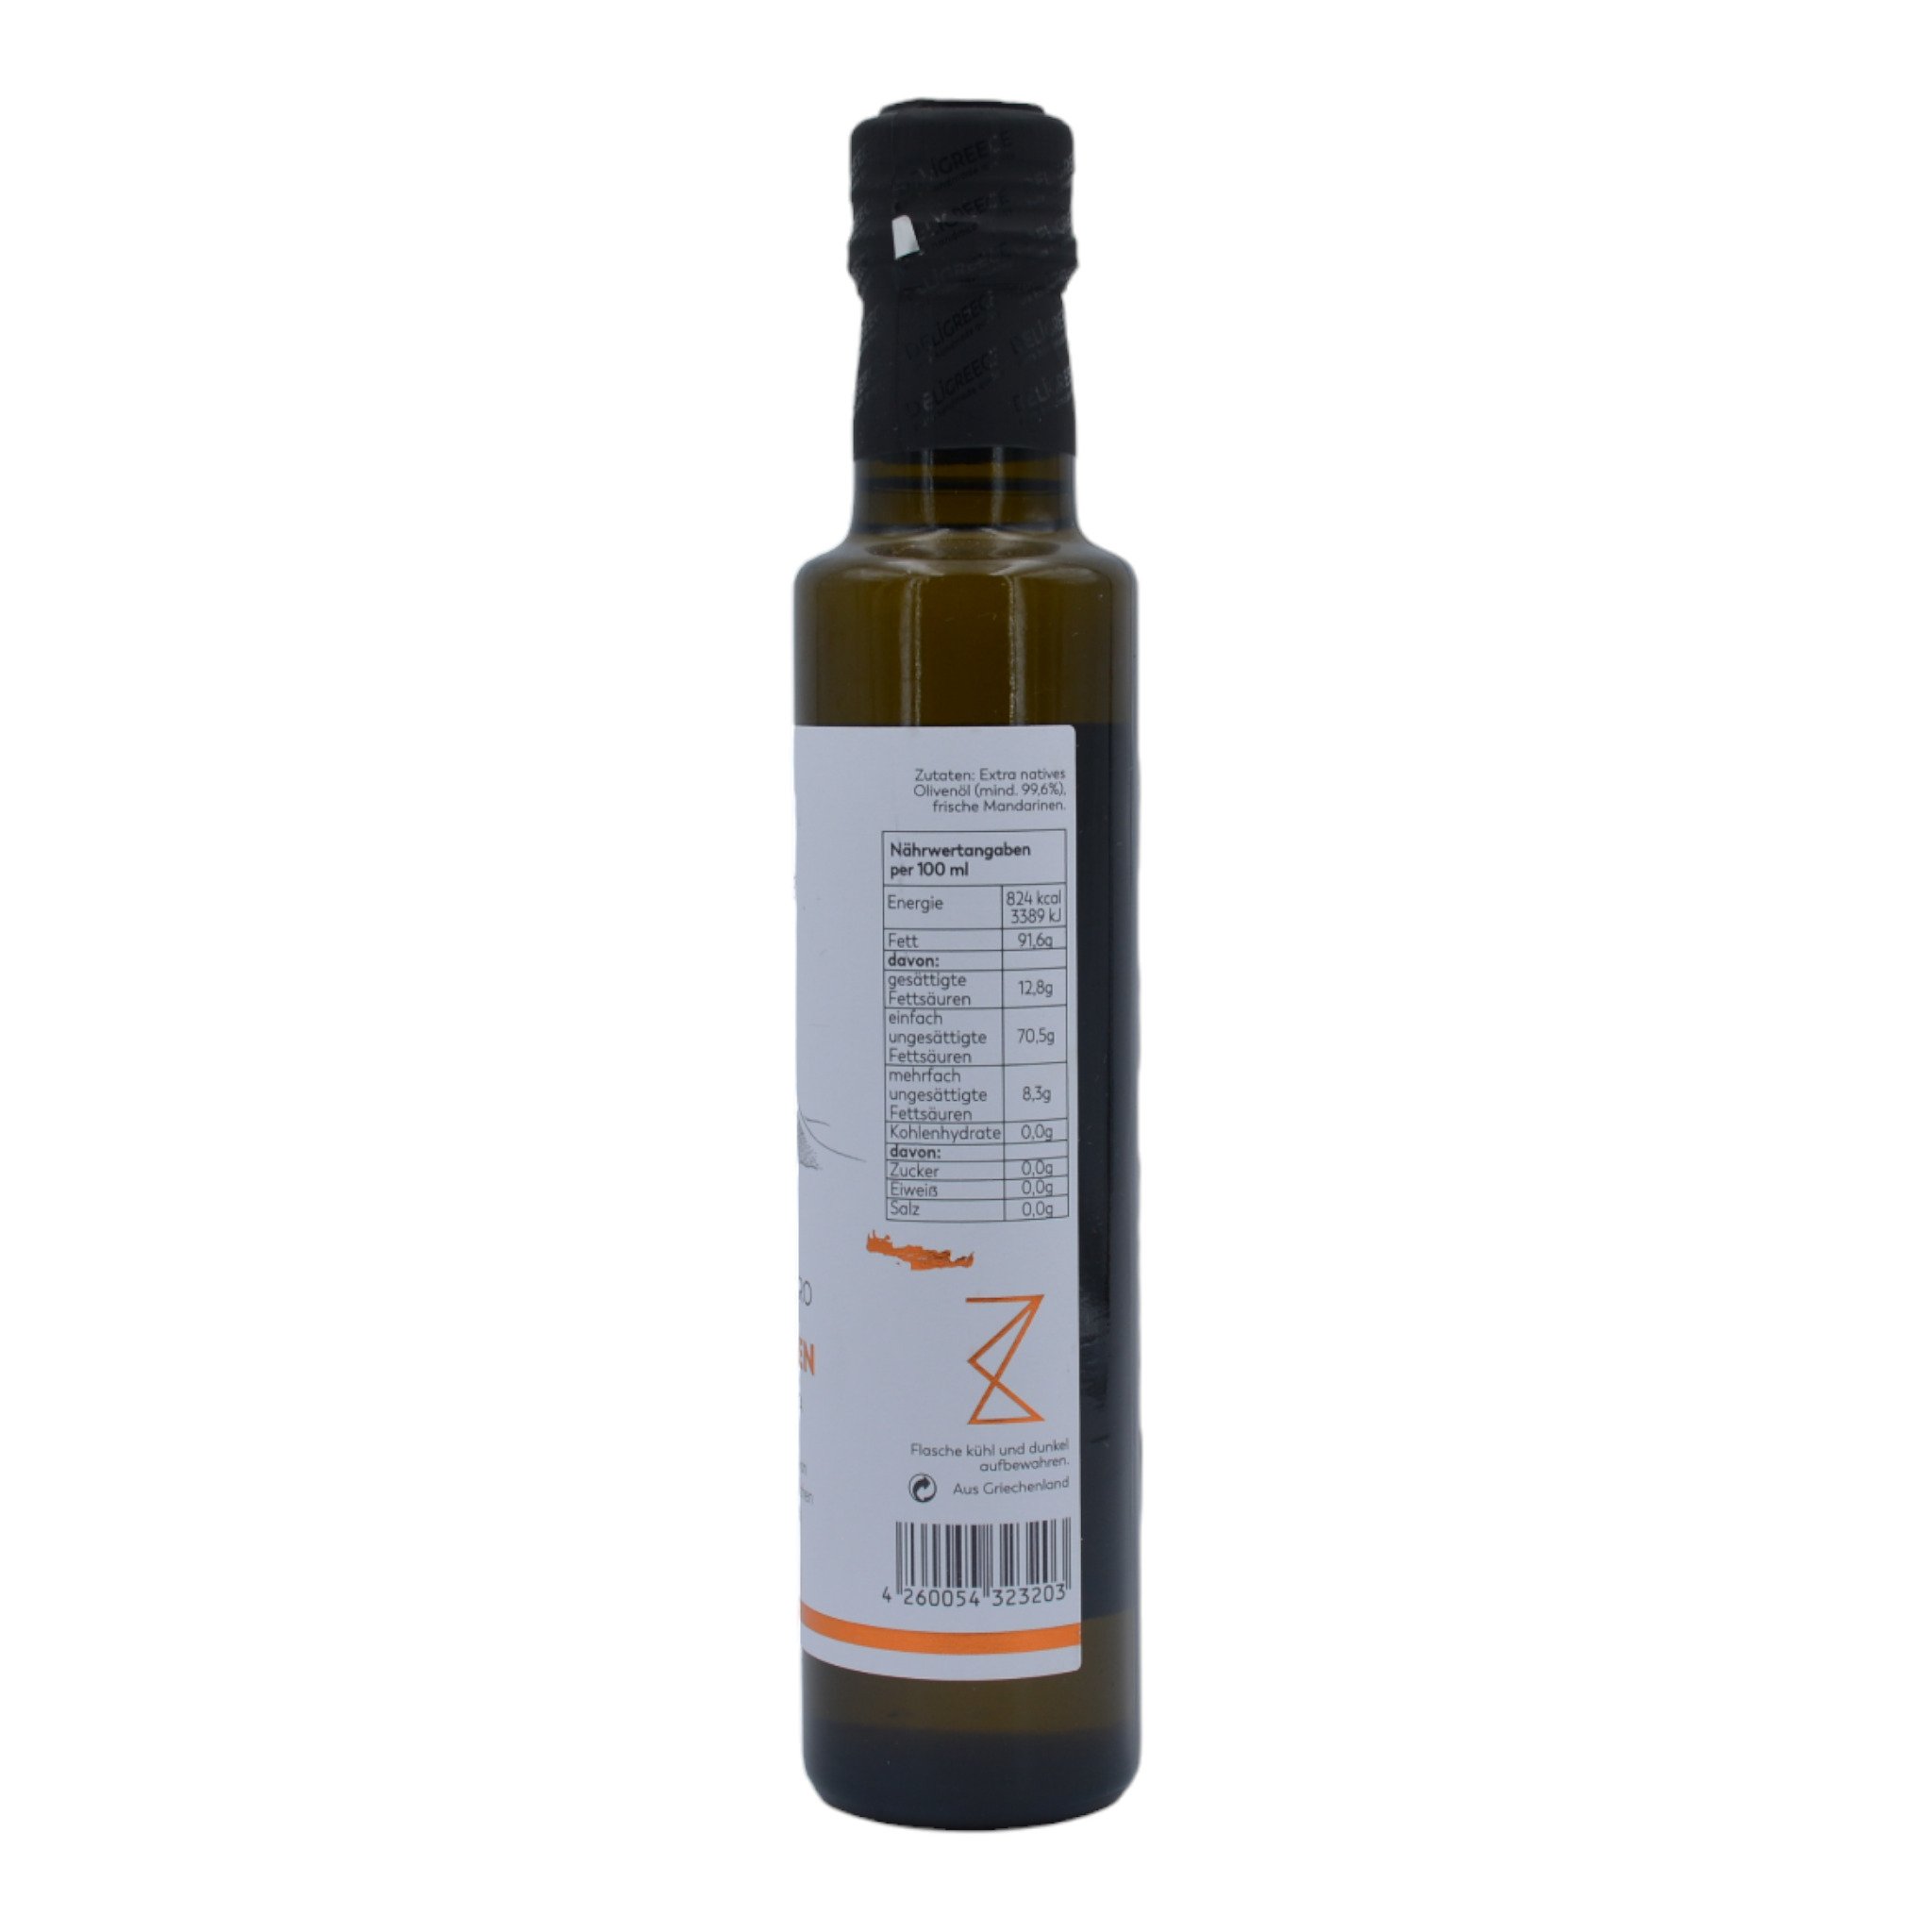 4260054323203Deligreece Castello Zacro Mandarinen Oliveöl aus Kreta s1